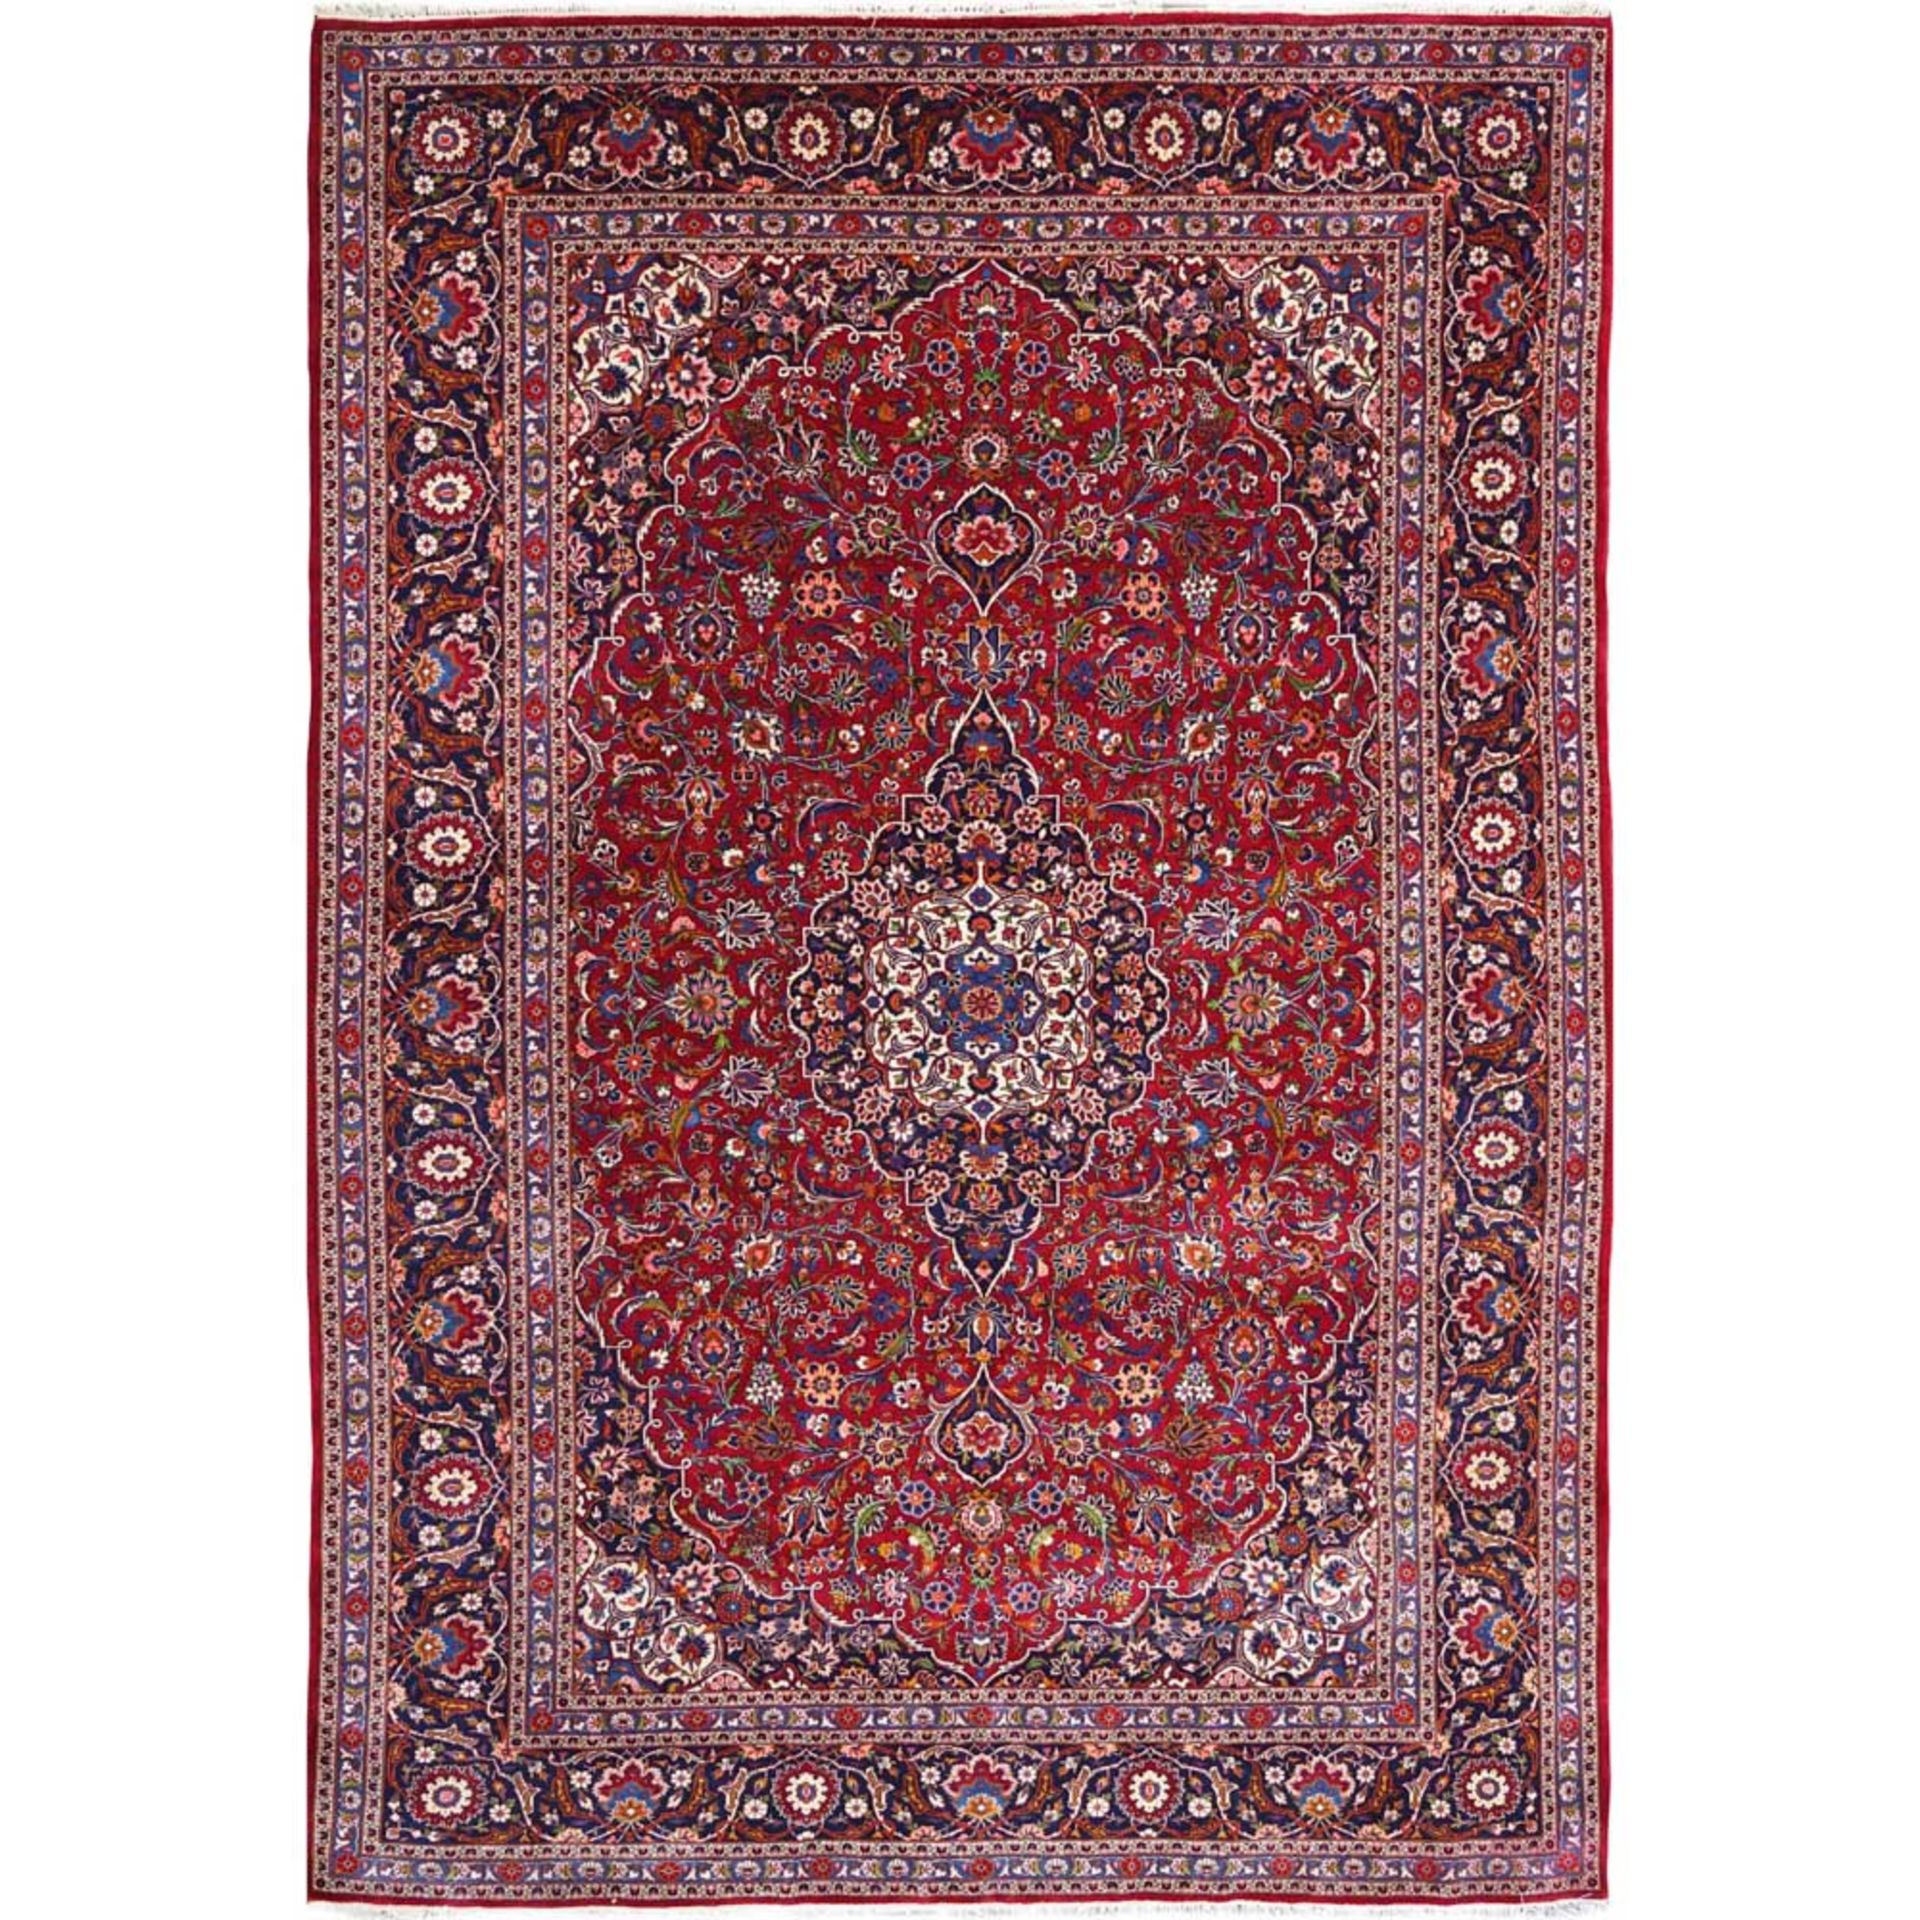 Kahan carpet 20th century 375x265 cm.